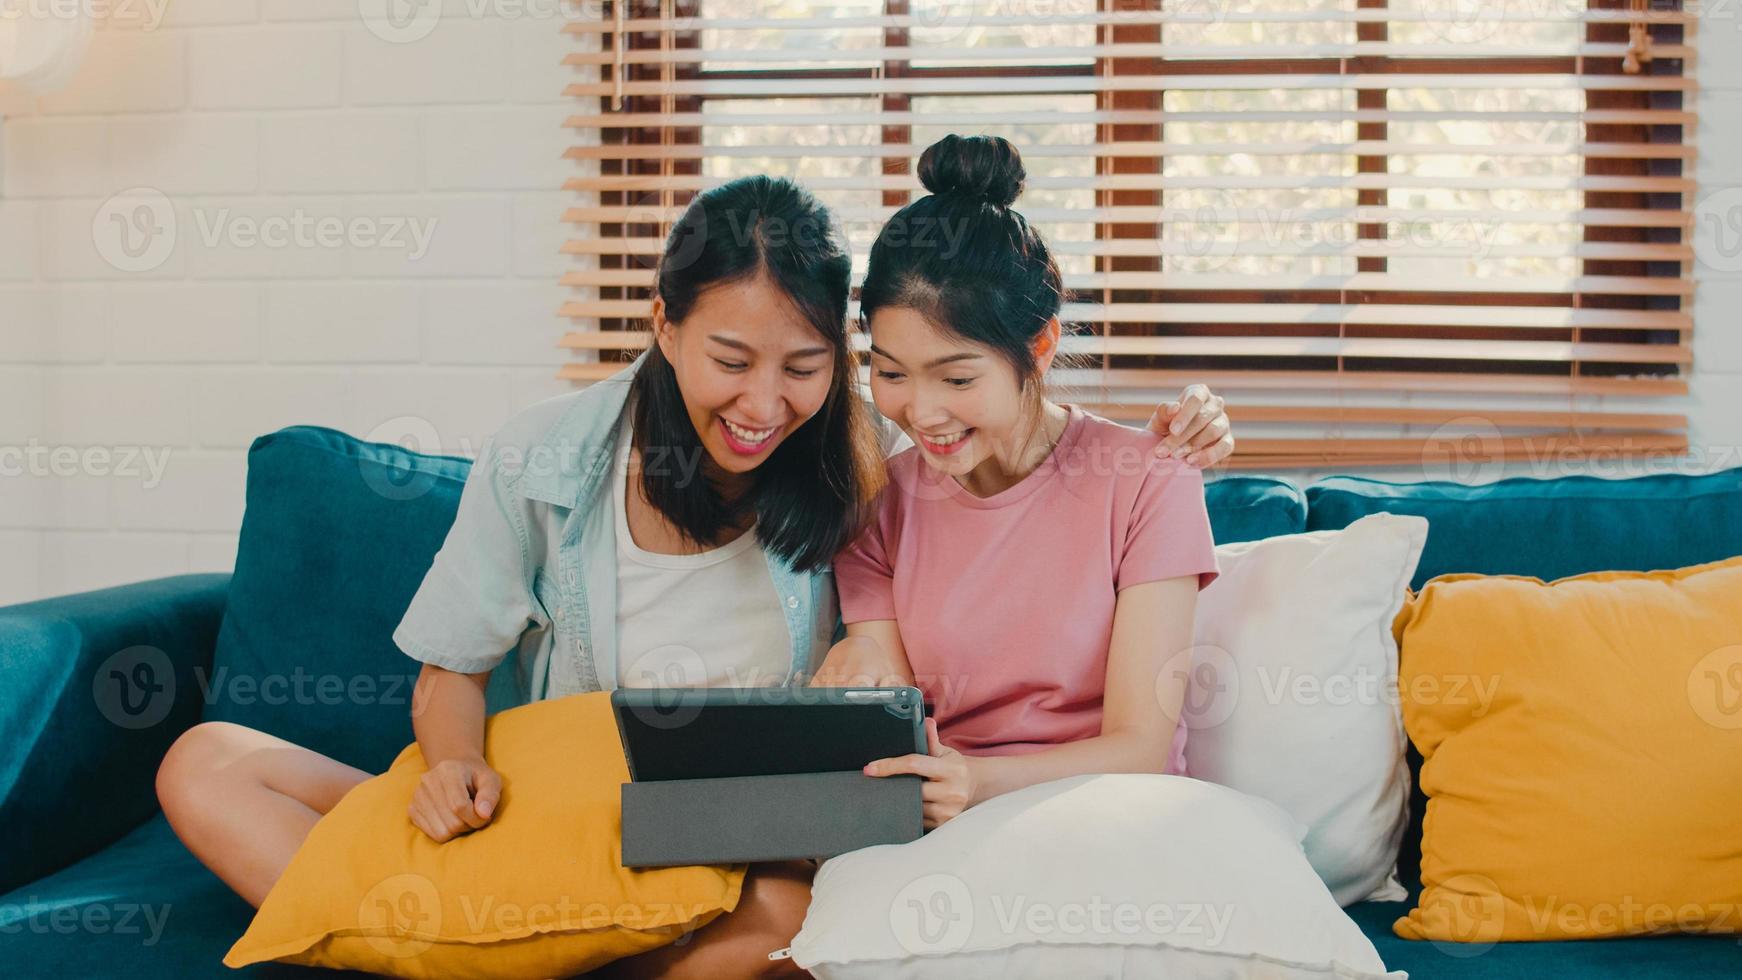 junges lesbisches lgbtq-frauenpaar, das zu hause tablet verwendet. asiatischer liebhaber weiblich glücklich entspannen spaß mit technologie beim filmen im internet zusammen beim liegen sofa im wohnzimmer konzept. foto